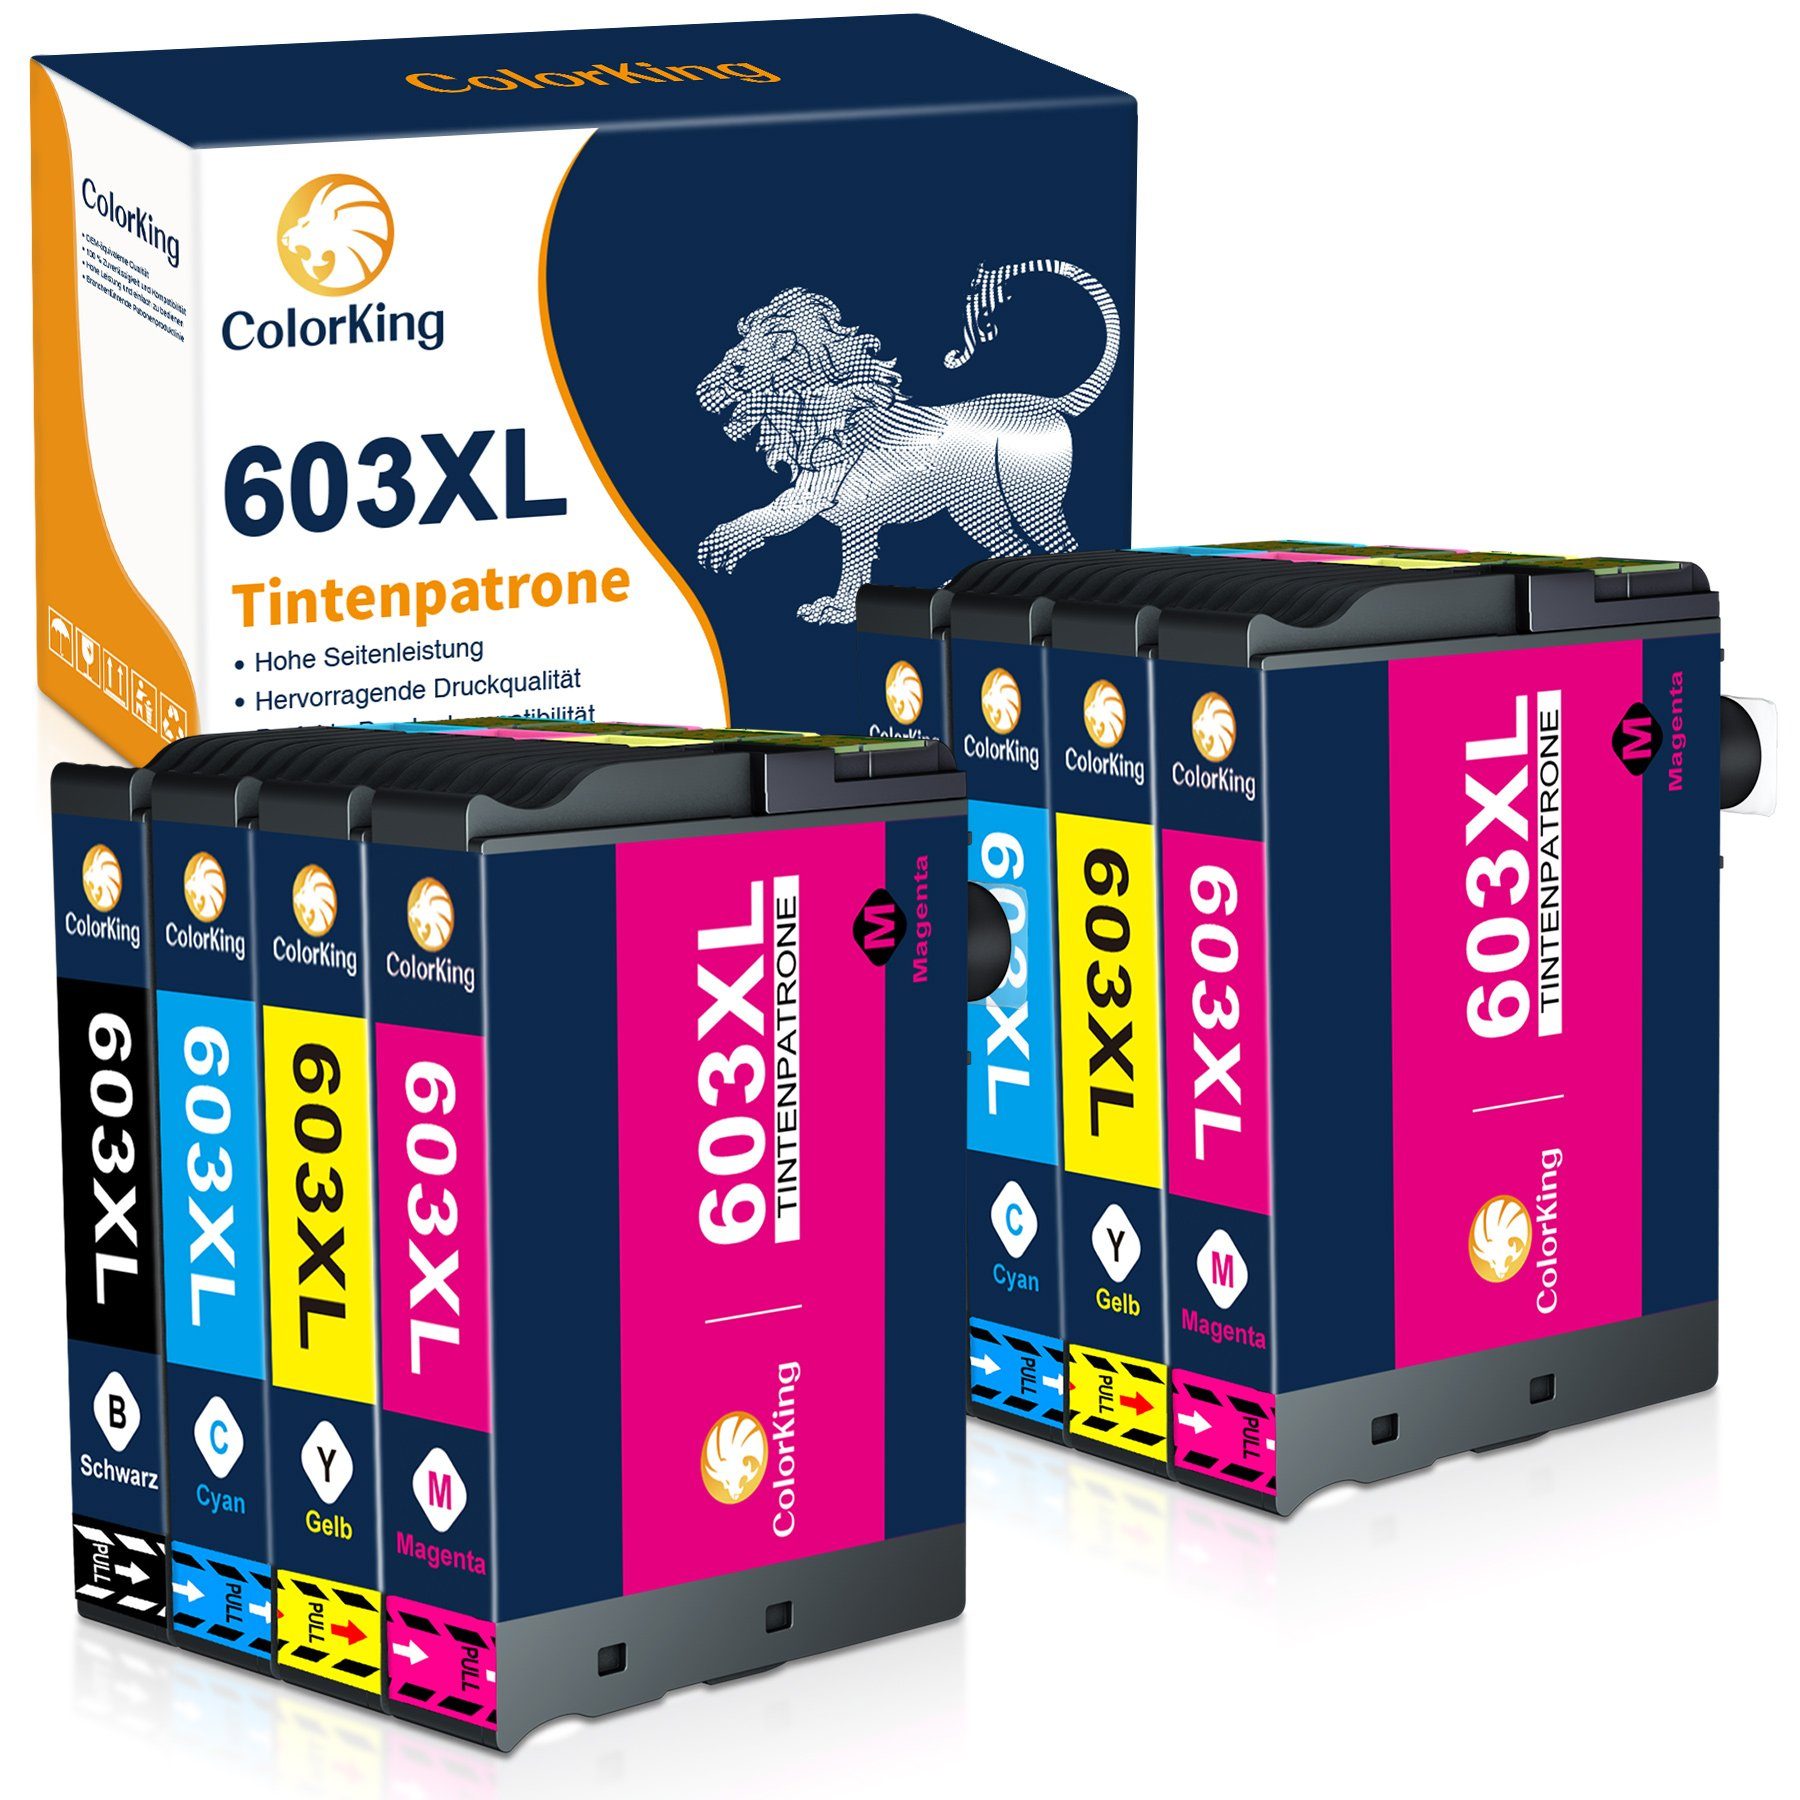 ColorKing 603XL multipack Tintenpatrone (Ersatz für Workforce WF-2835 2850 2830 2810) 2* Schwarz, 2* Cyan, 2* Magenta, 2* Gelb (8er Set) | Tintenpatronen